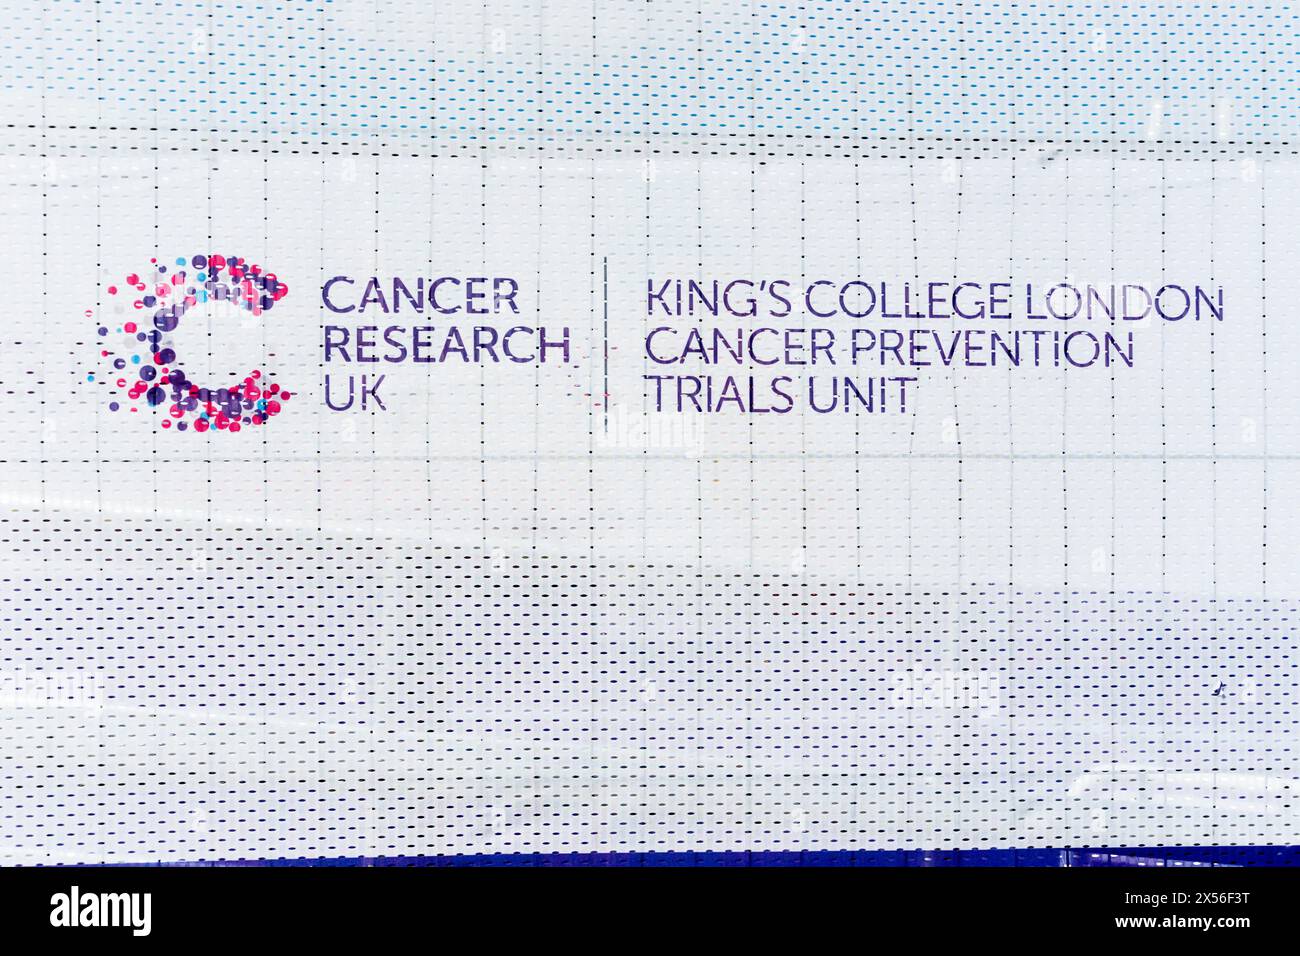 Cancer Research UK & King's College London cancer Prevention Trials Unit signe dans une clinique pour l'essai NHS Galleri - un nouveau test sanguin pour détecter le cancer. Banque D'Images